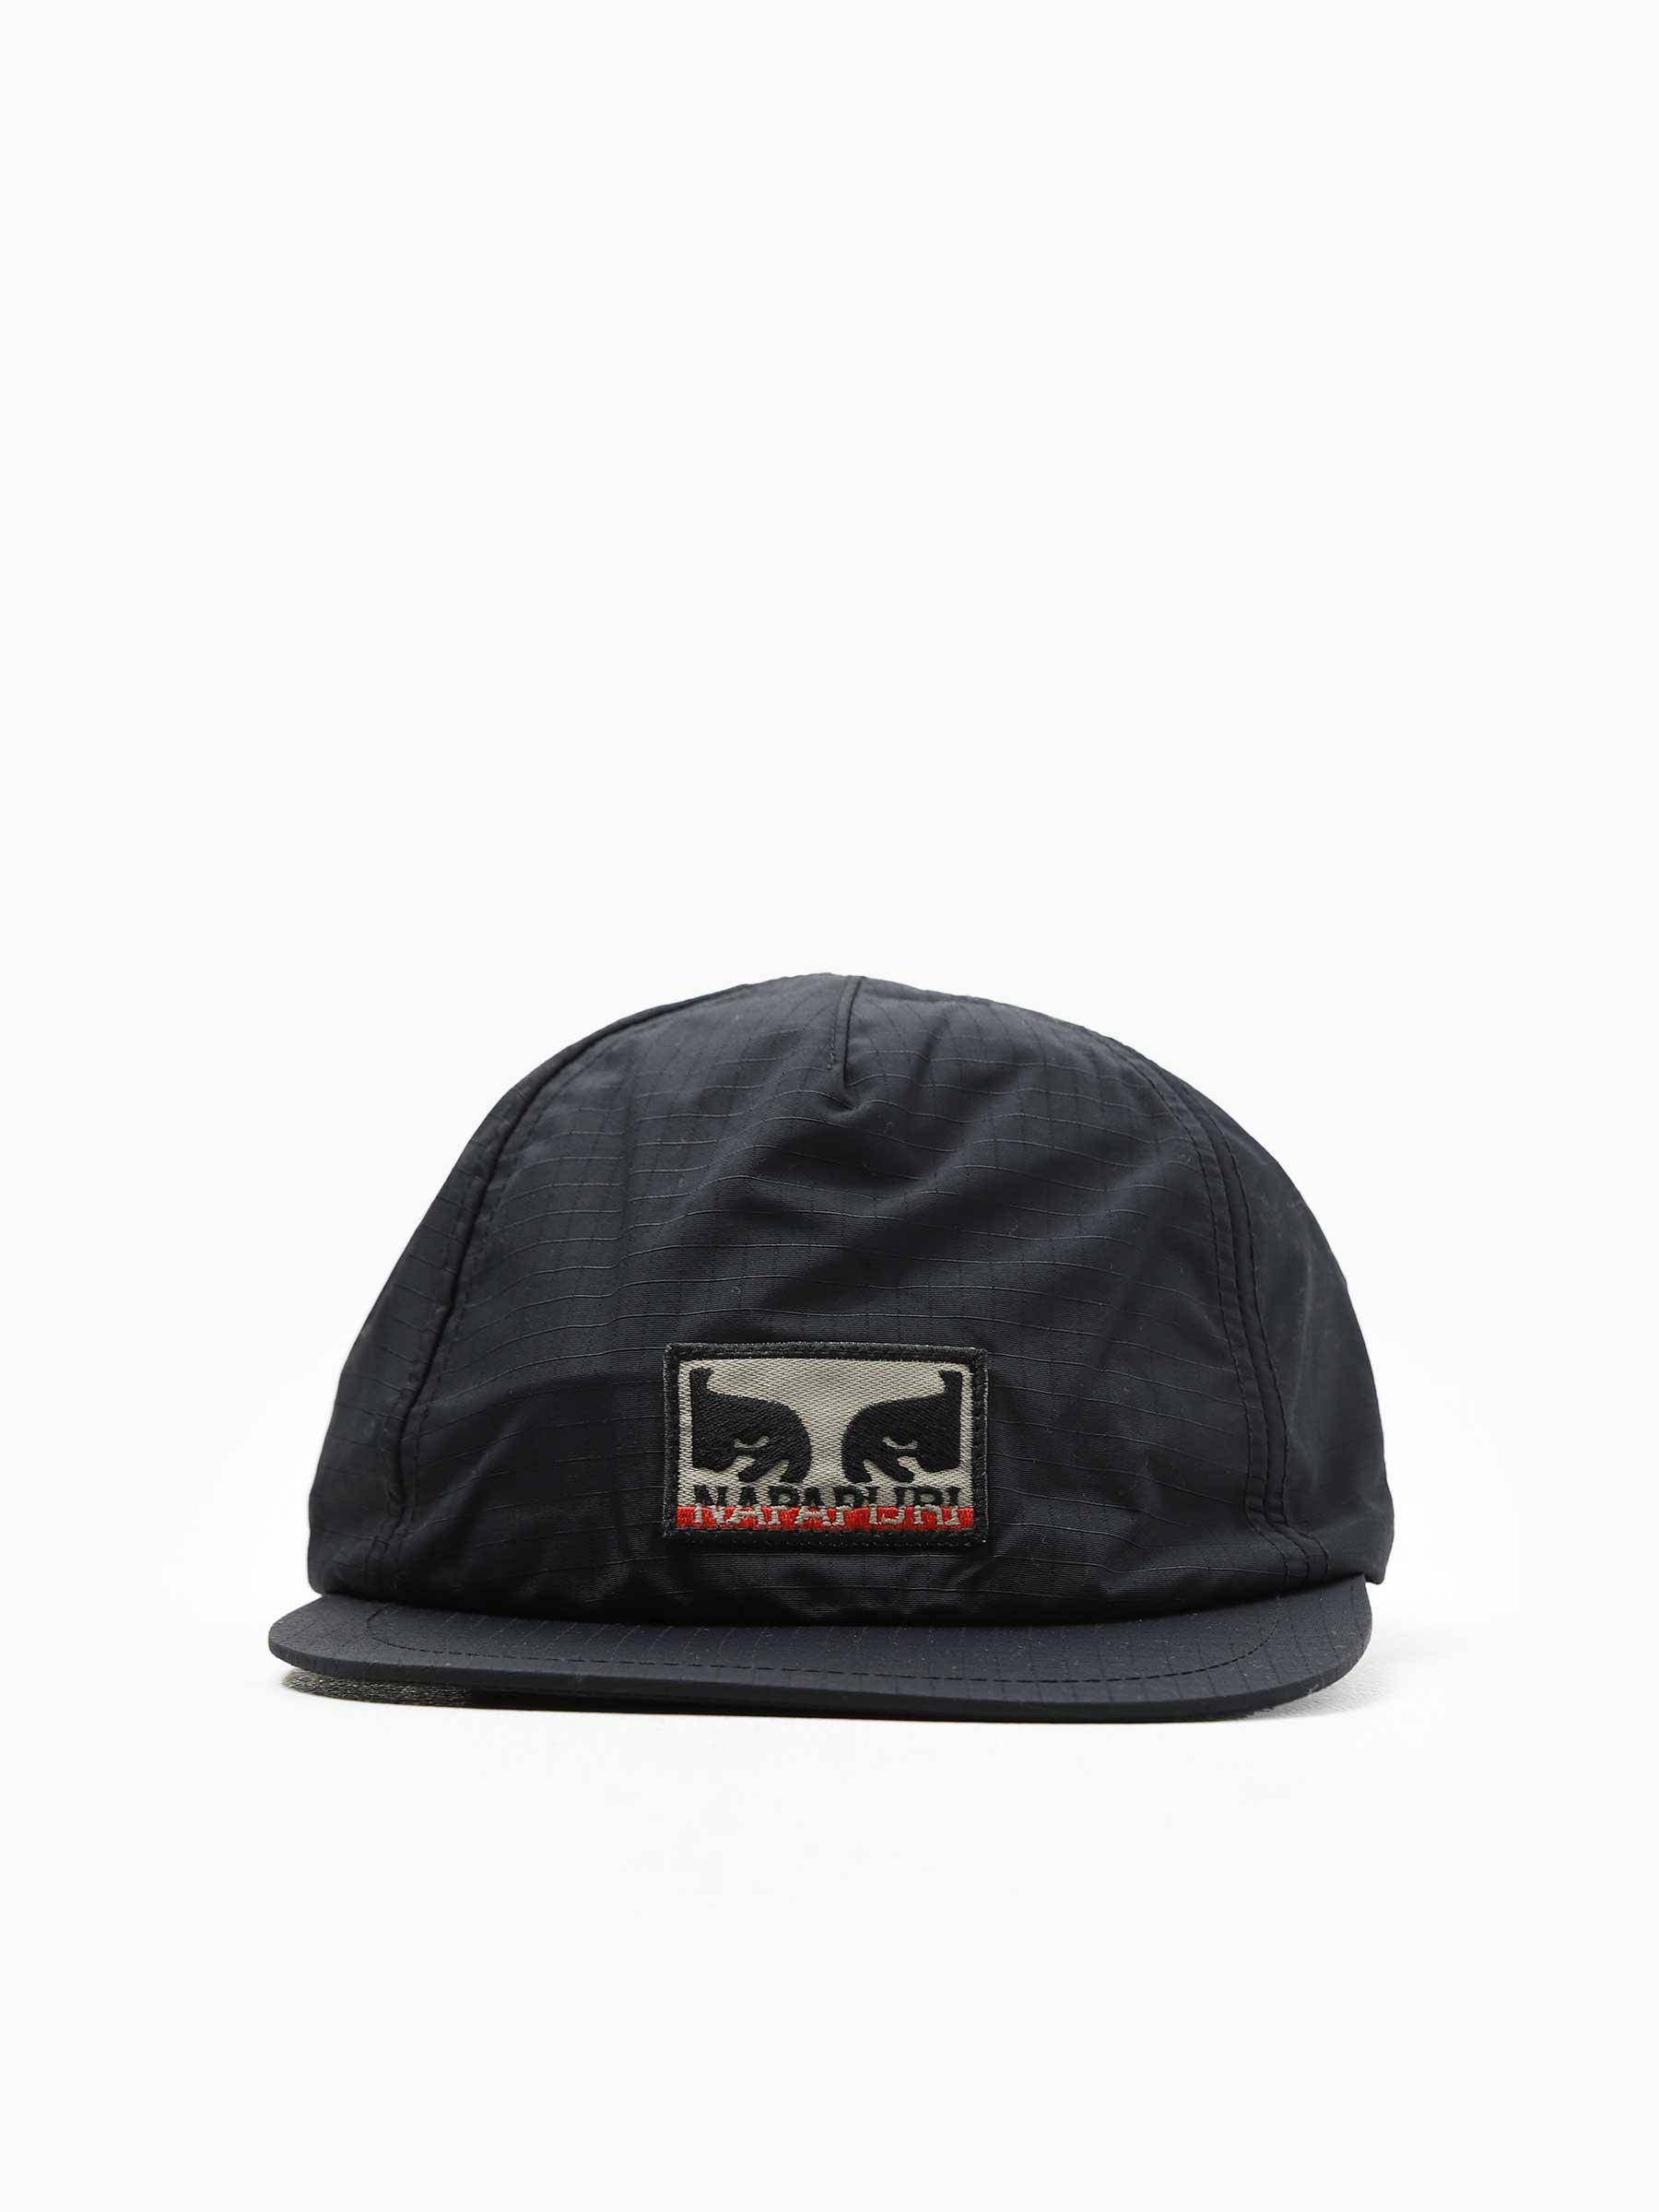 Obey x Napapijri Hat Black NA4HMN-BLK